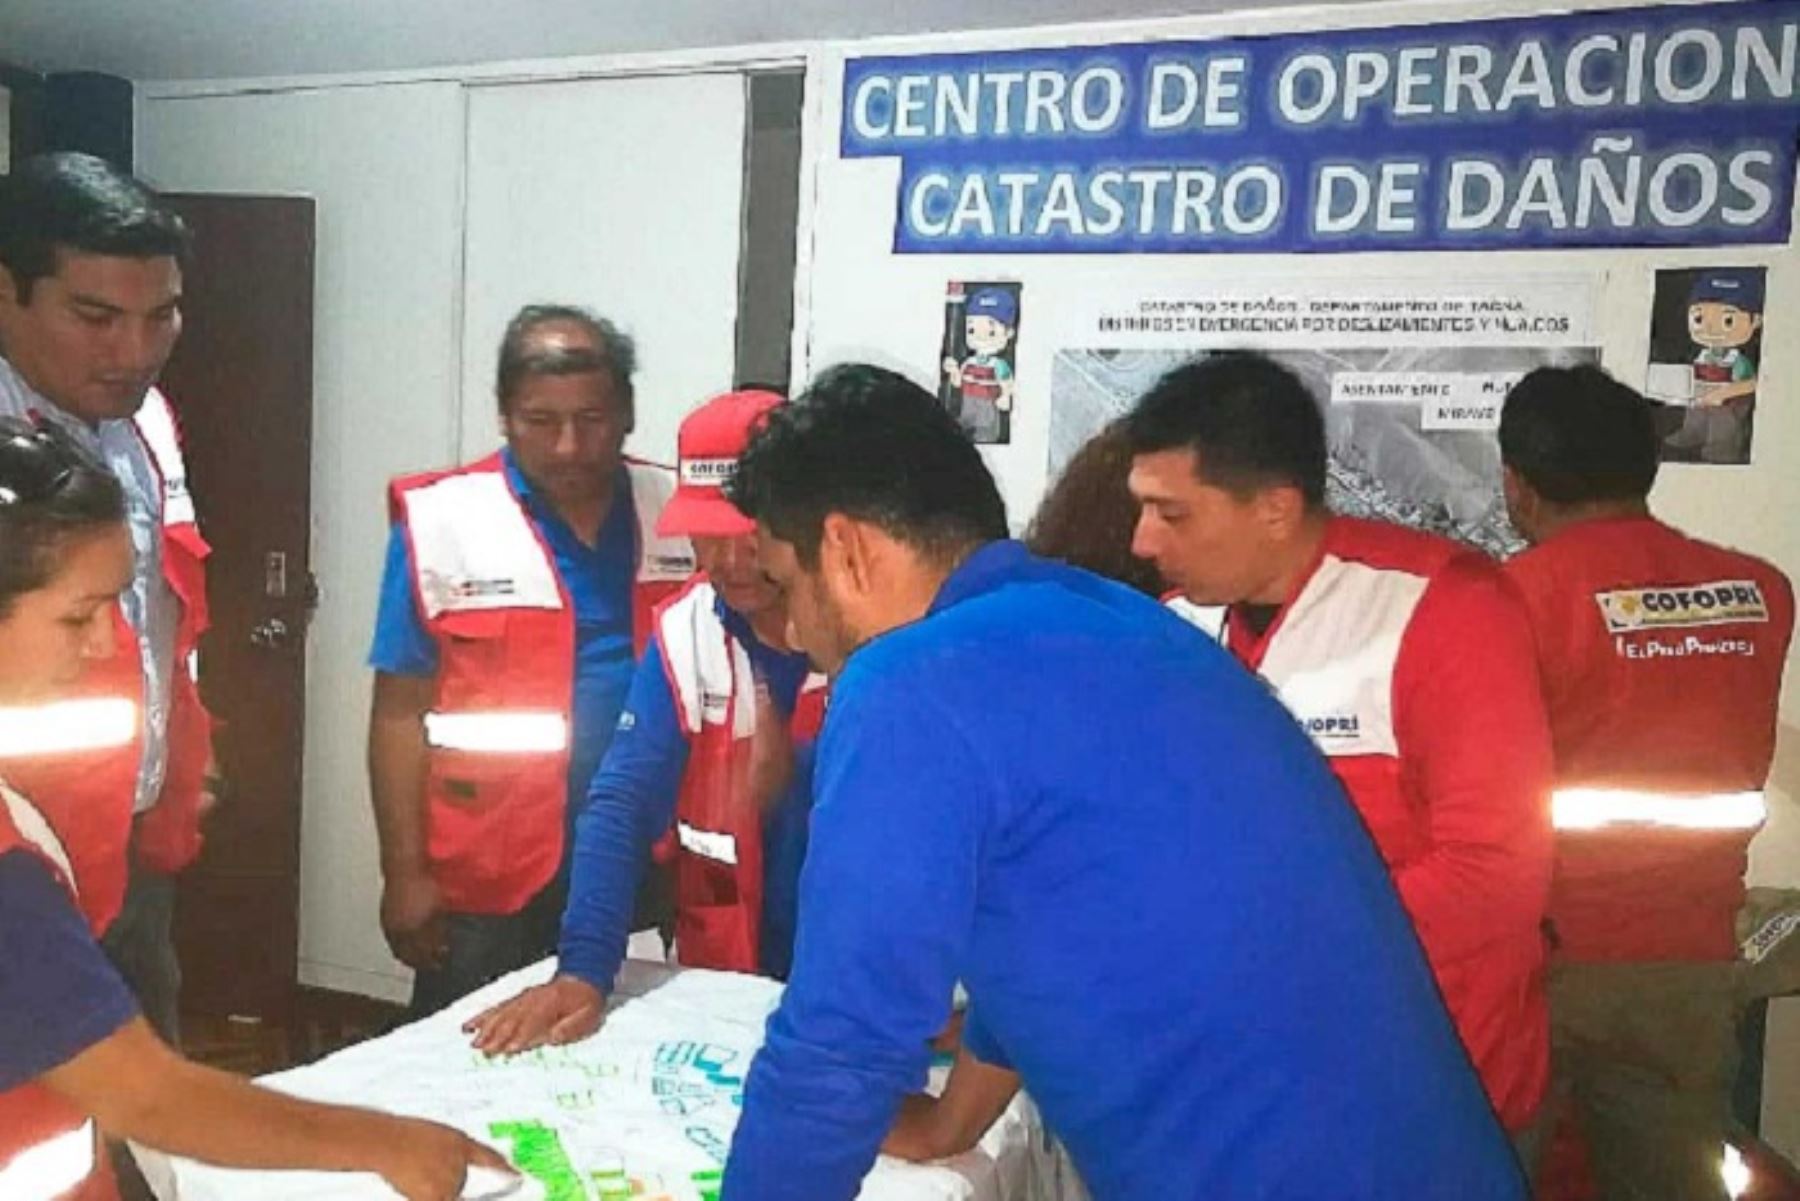 El Organismo de Formalización de la Propiedad Informal (Cofopri) instaló en la región Tacna el Centro de Operaciones de Catastro de Daños en el marco de las acciones de catastro de predios que viene realizando en distintas partes del país declaradas en zona de emergencia.